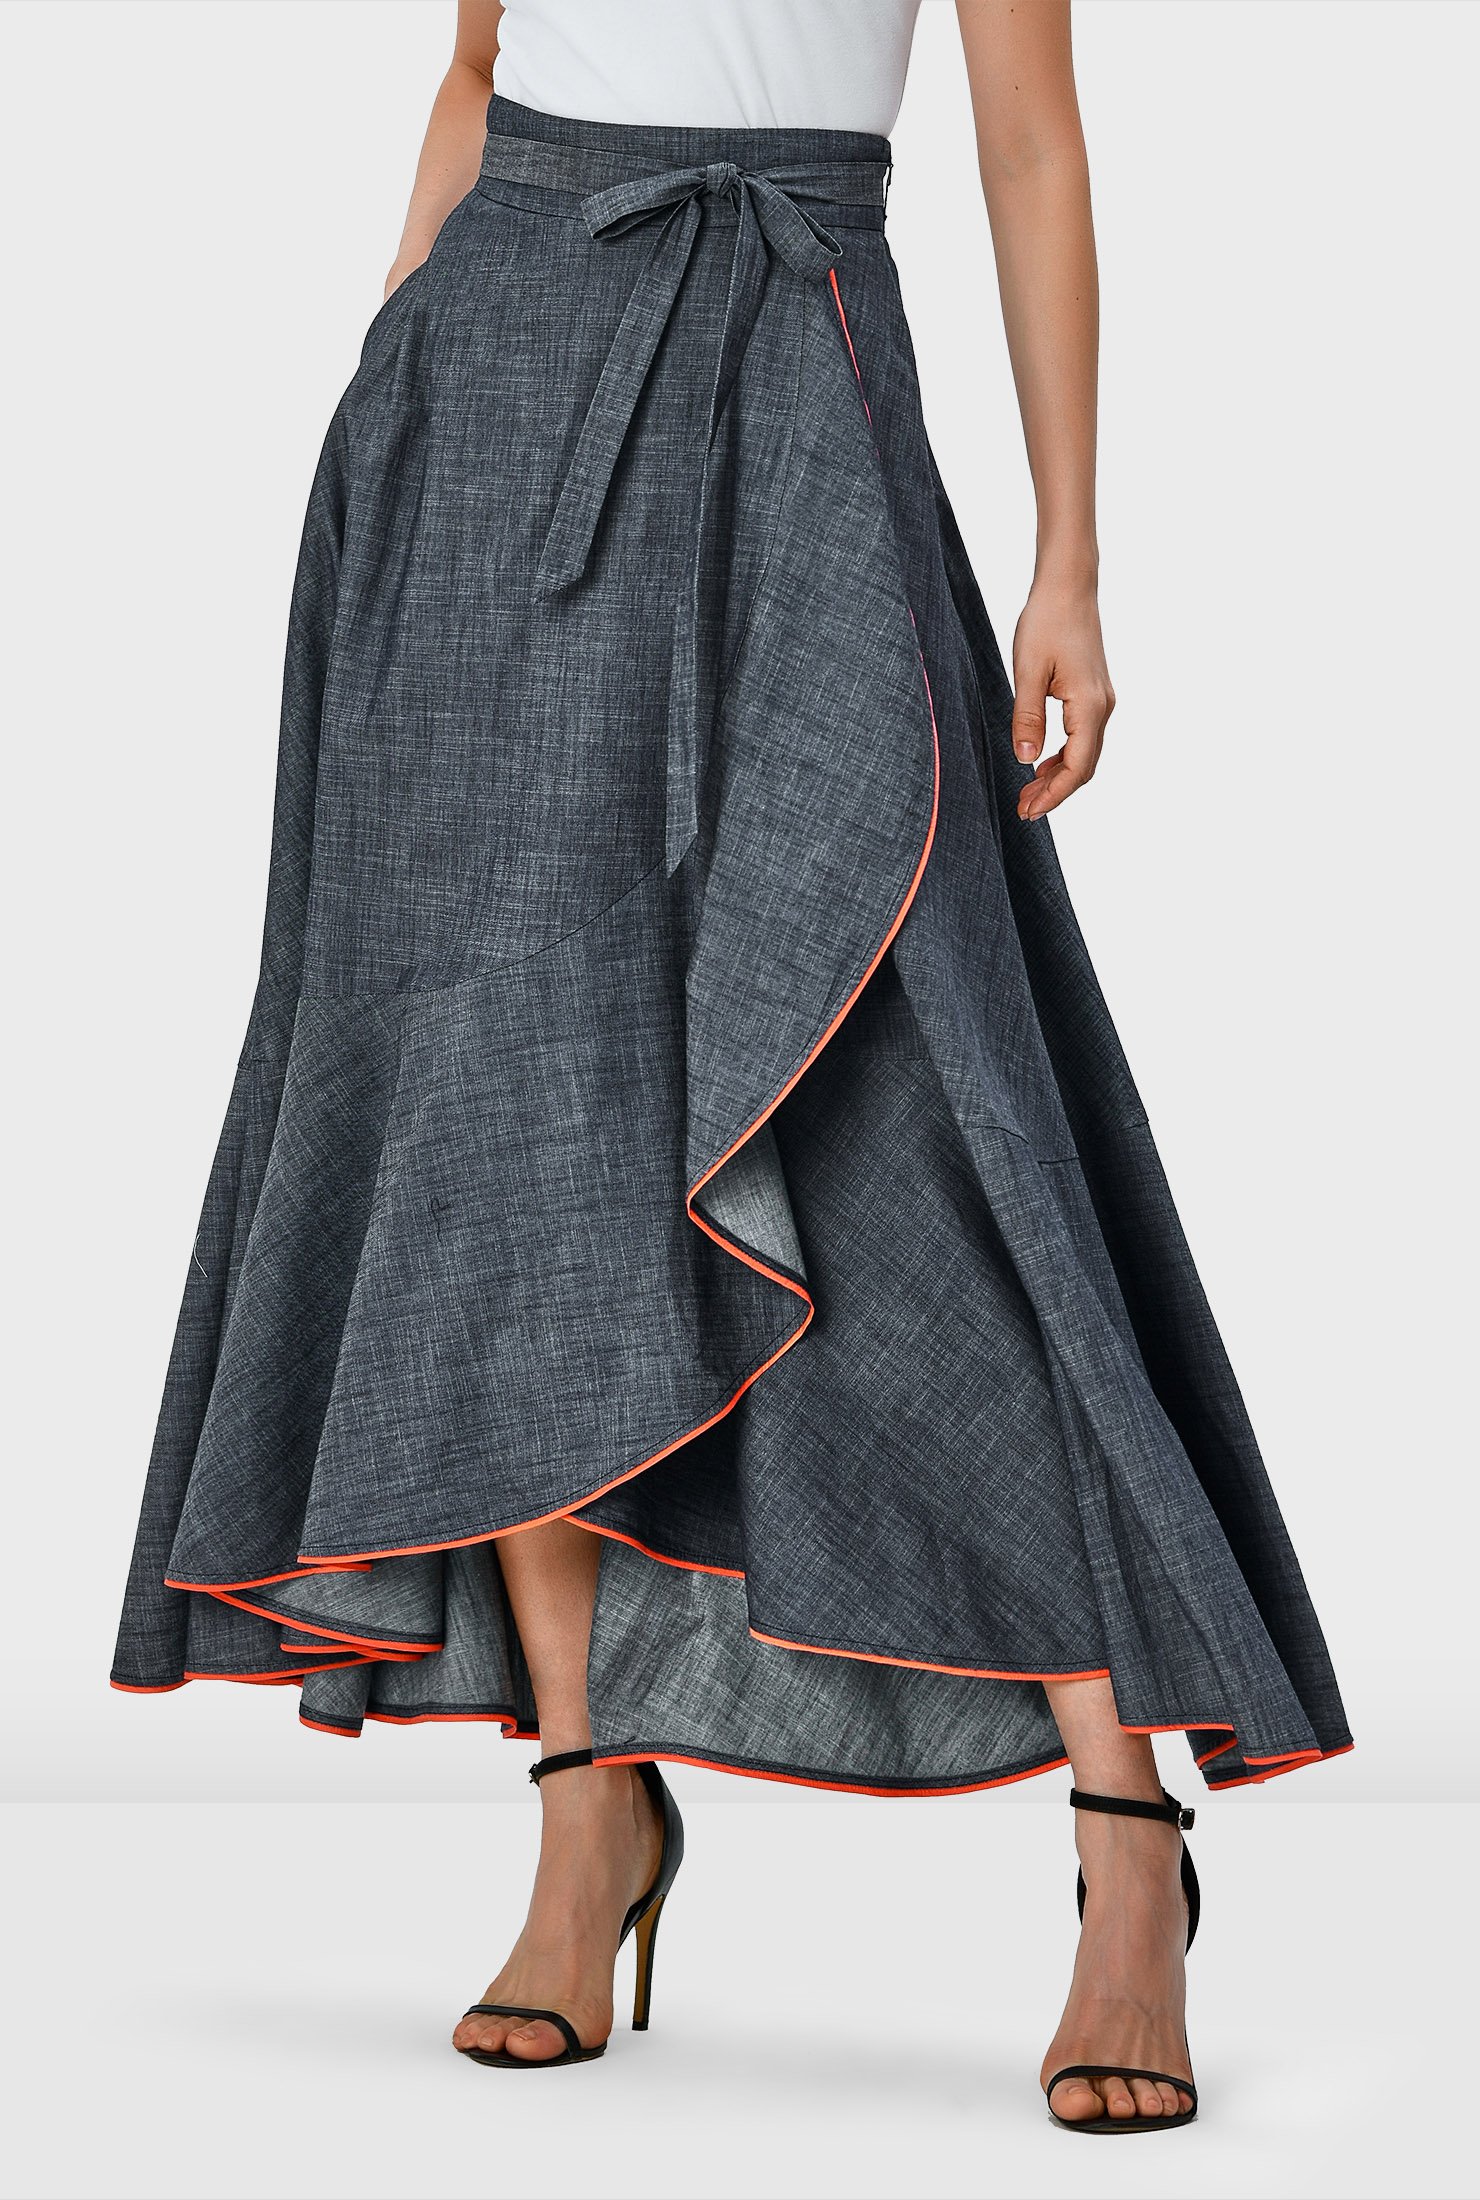 Shop Contrast trim cotton chambray faux wrap skirt eShakti